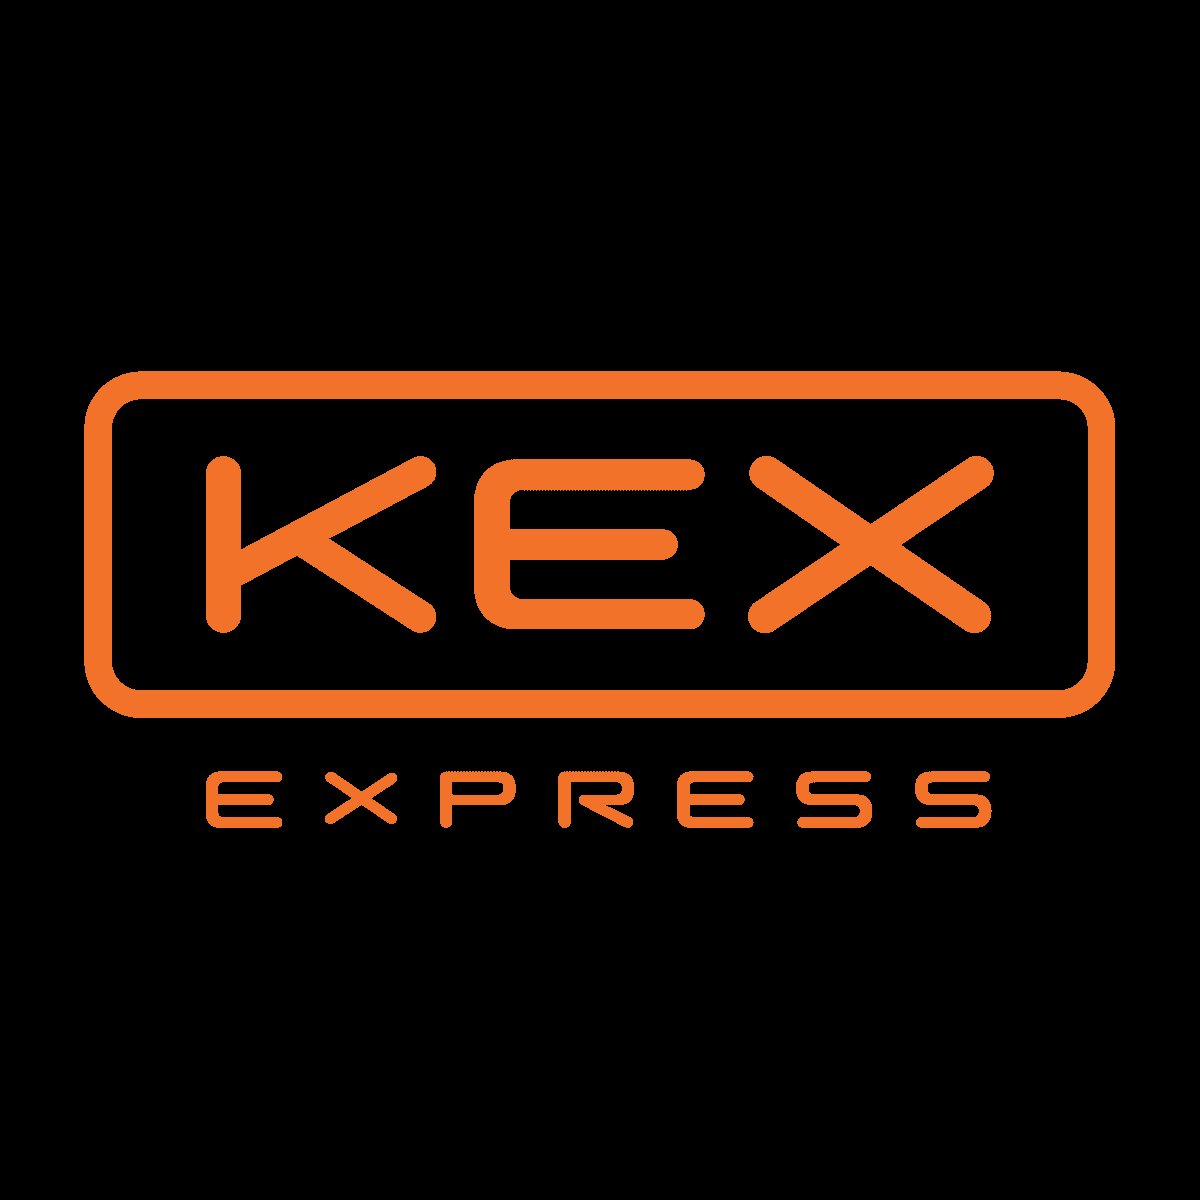 เคอรี่ เอ็กซ์เพรส ประกาศรีแบรนด์ครั้งใหญ่ ก้าวสู่ยุคใหม่ภายใต้ชื่อ KEX